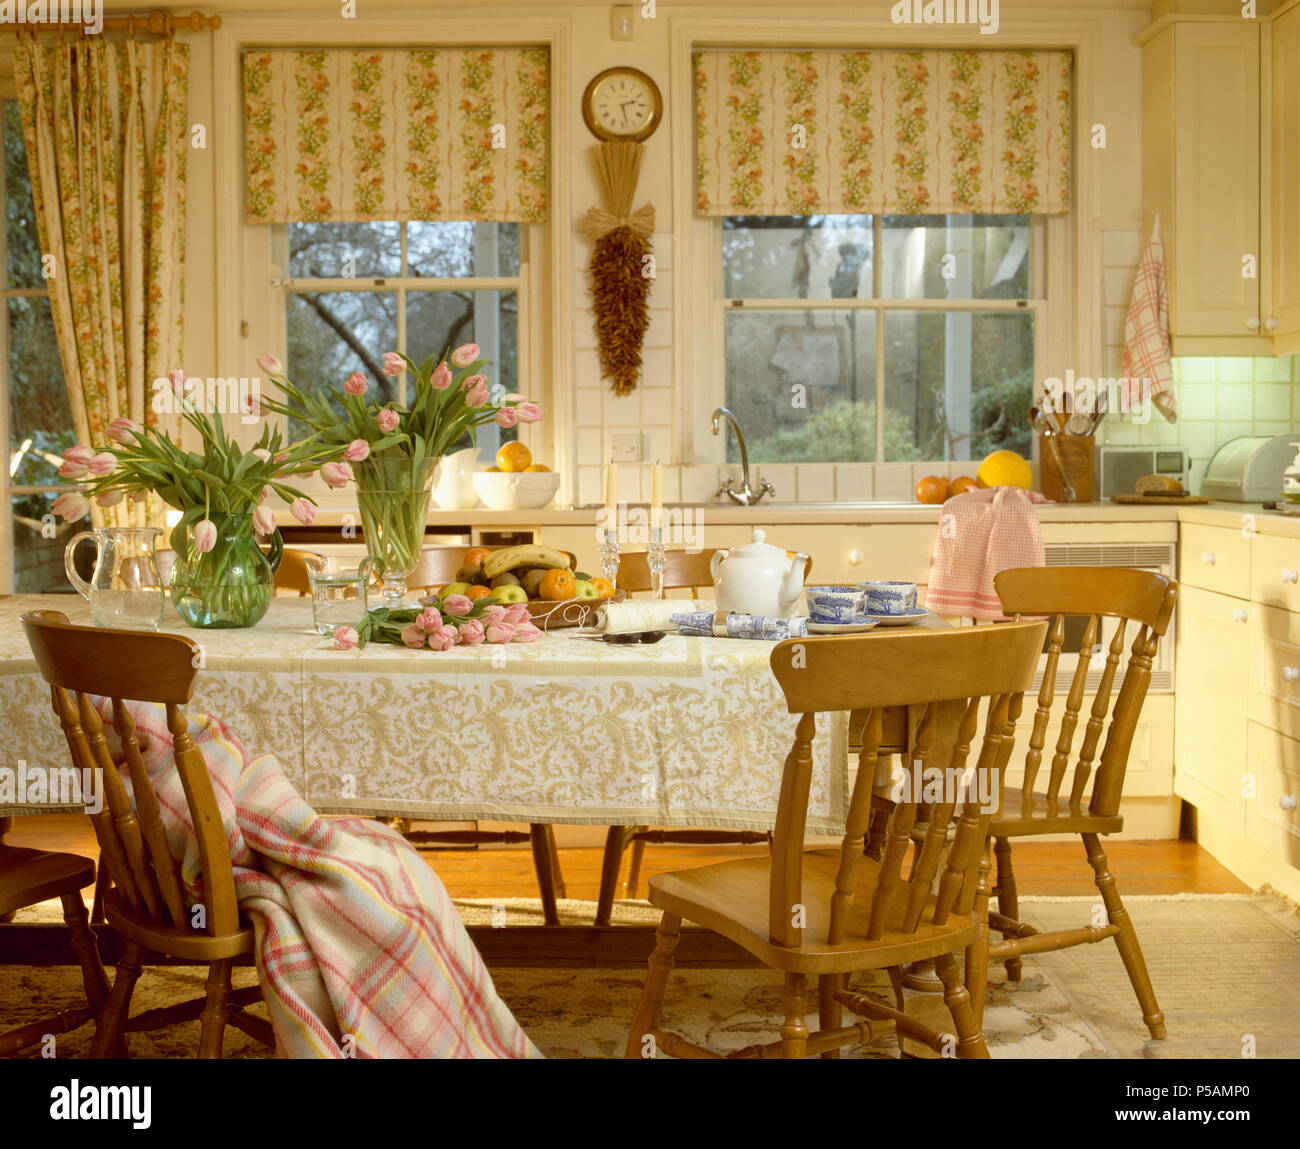 Florale gestreifte blind auf Windows in der traditionellen Küche Esszimmer mit Kiefer Stühle am Tisch mit spitze Lappen Stockfoto